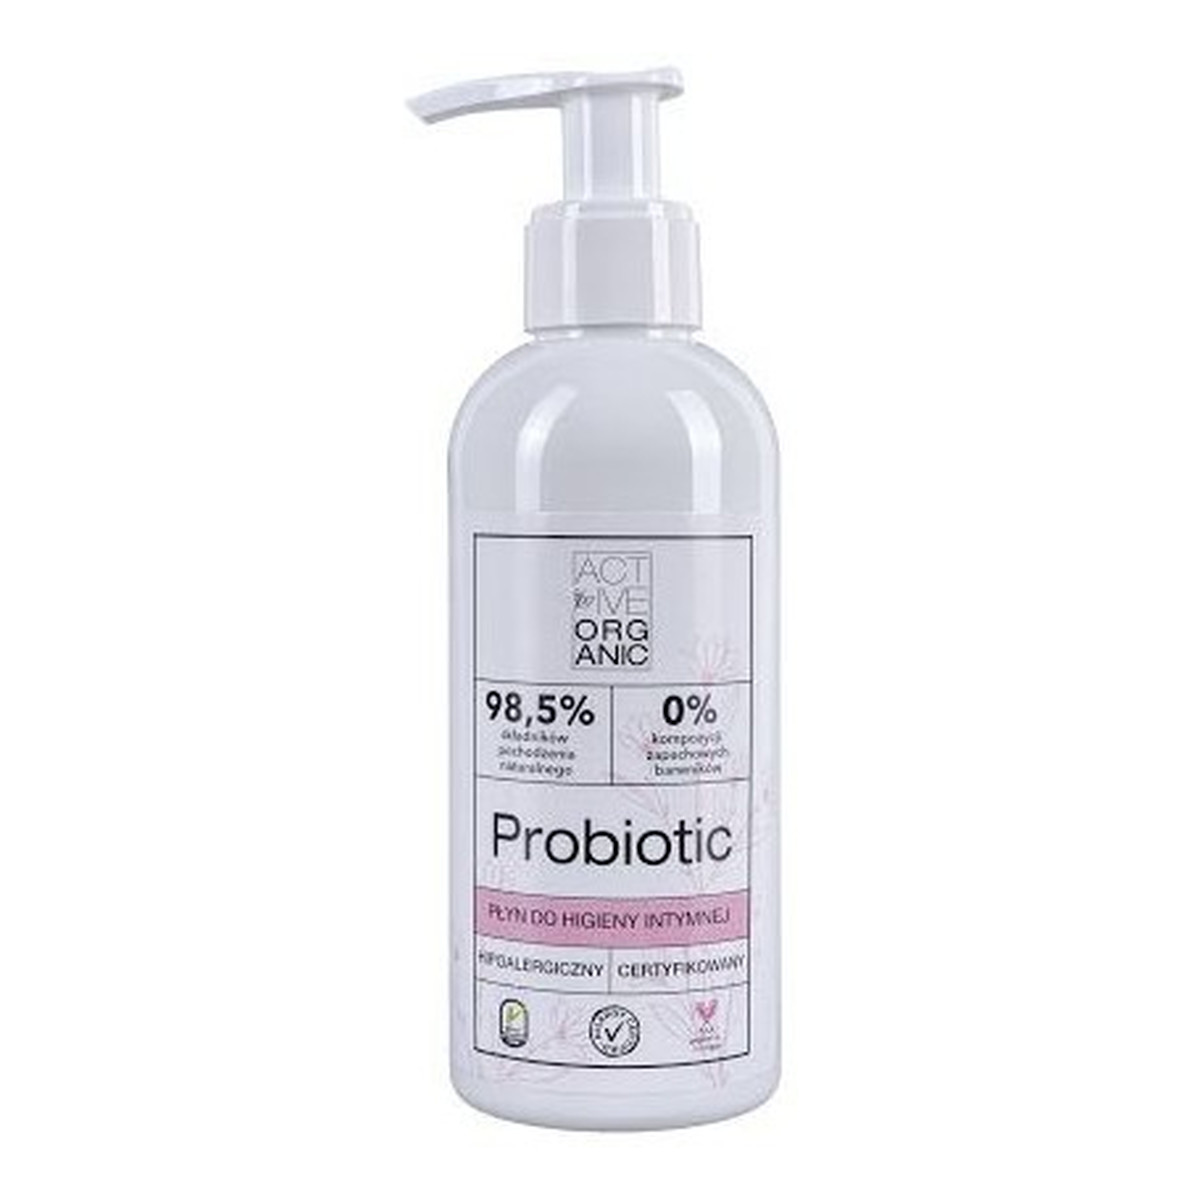 Active Organic Probiotic płyn do higieny intymnej 200ml